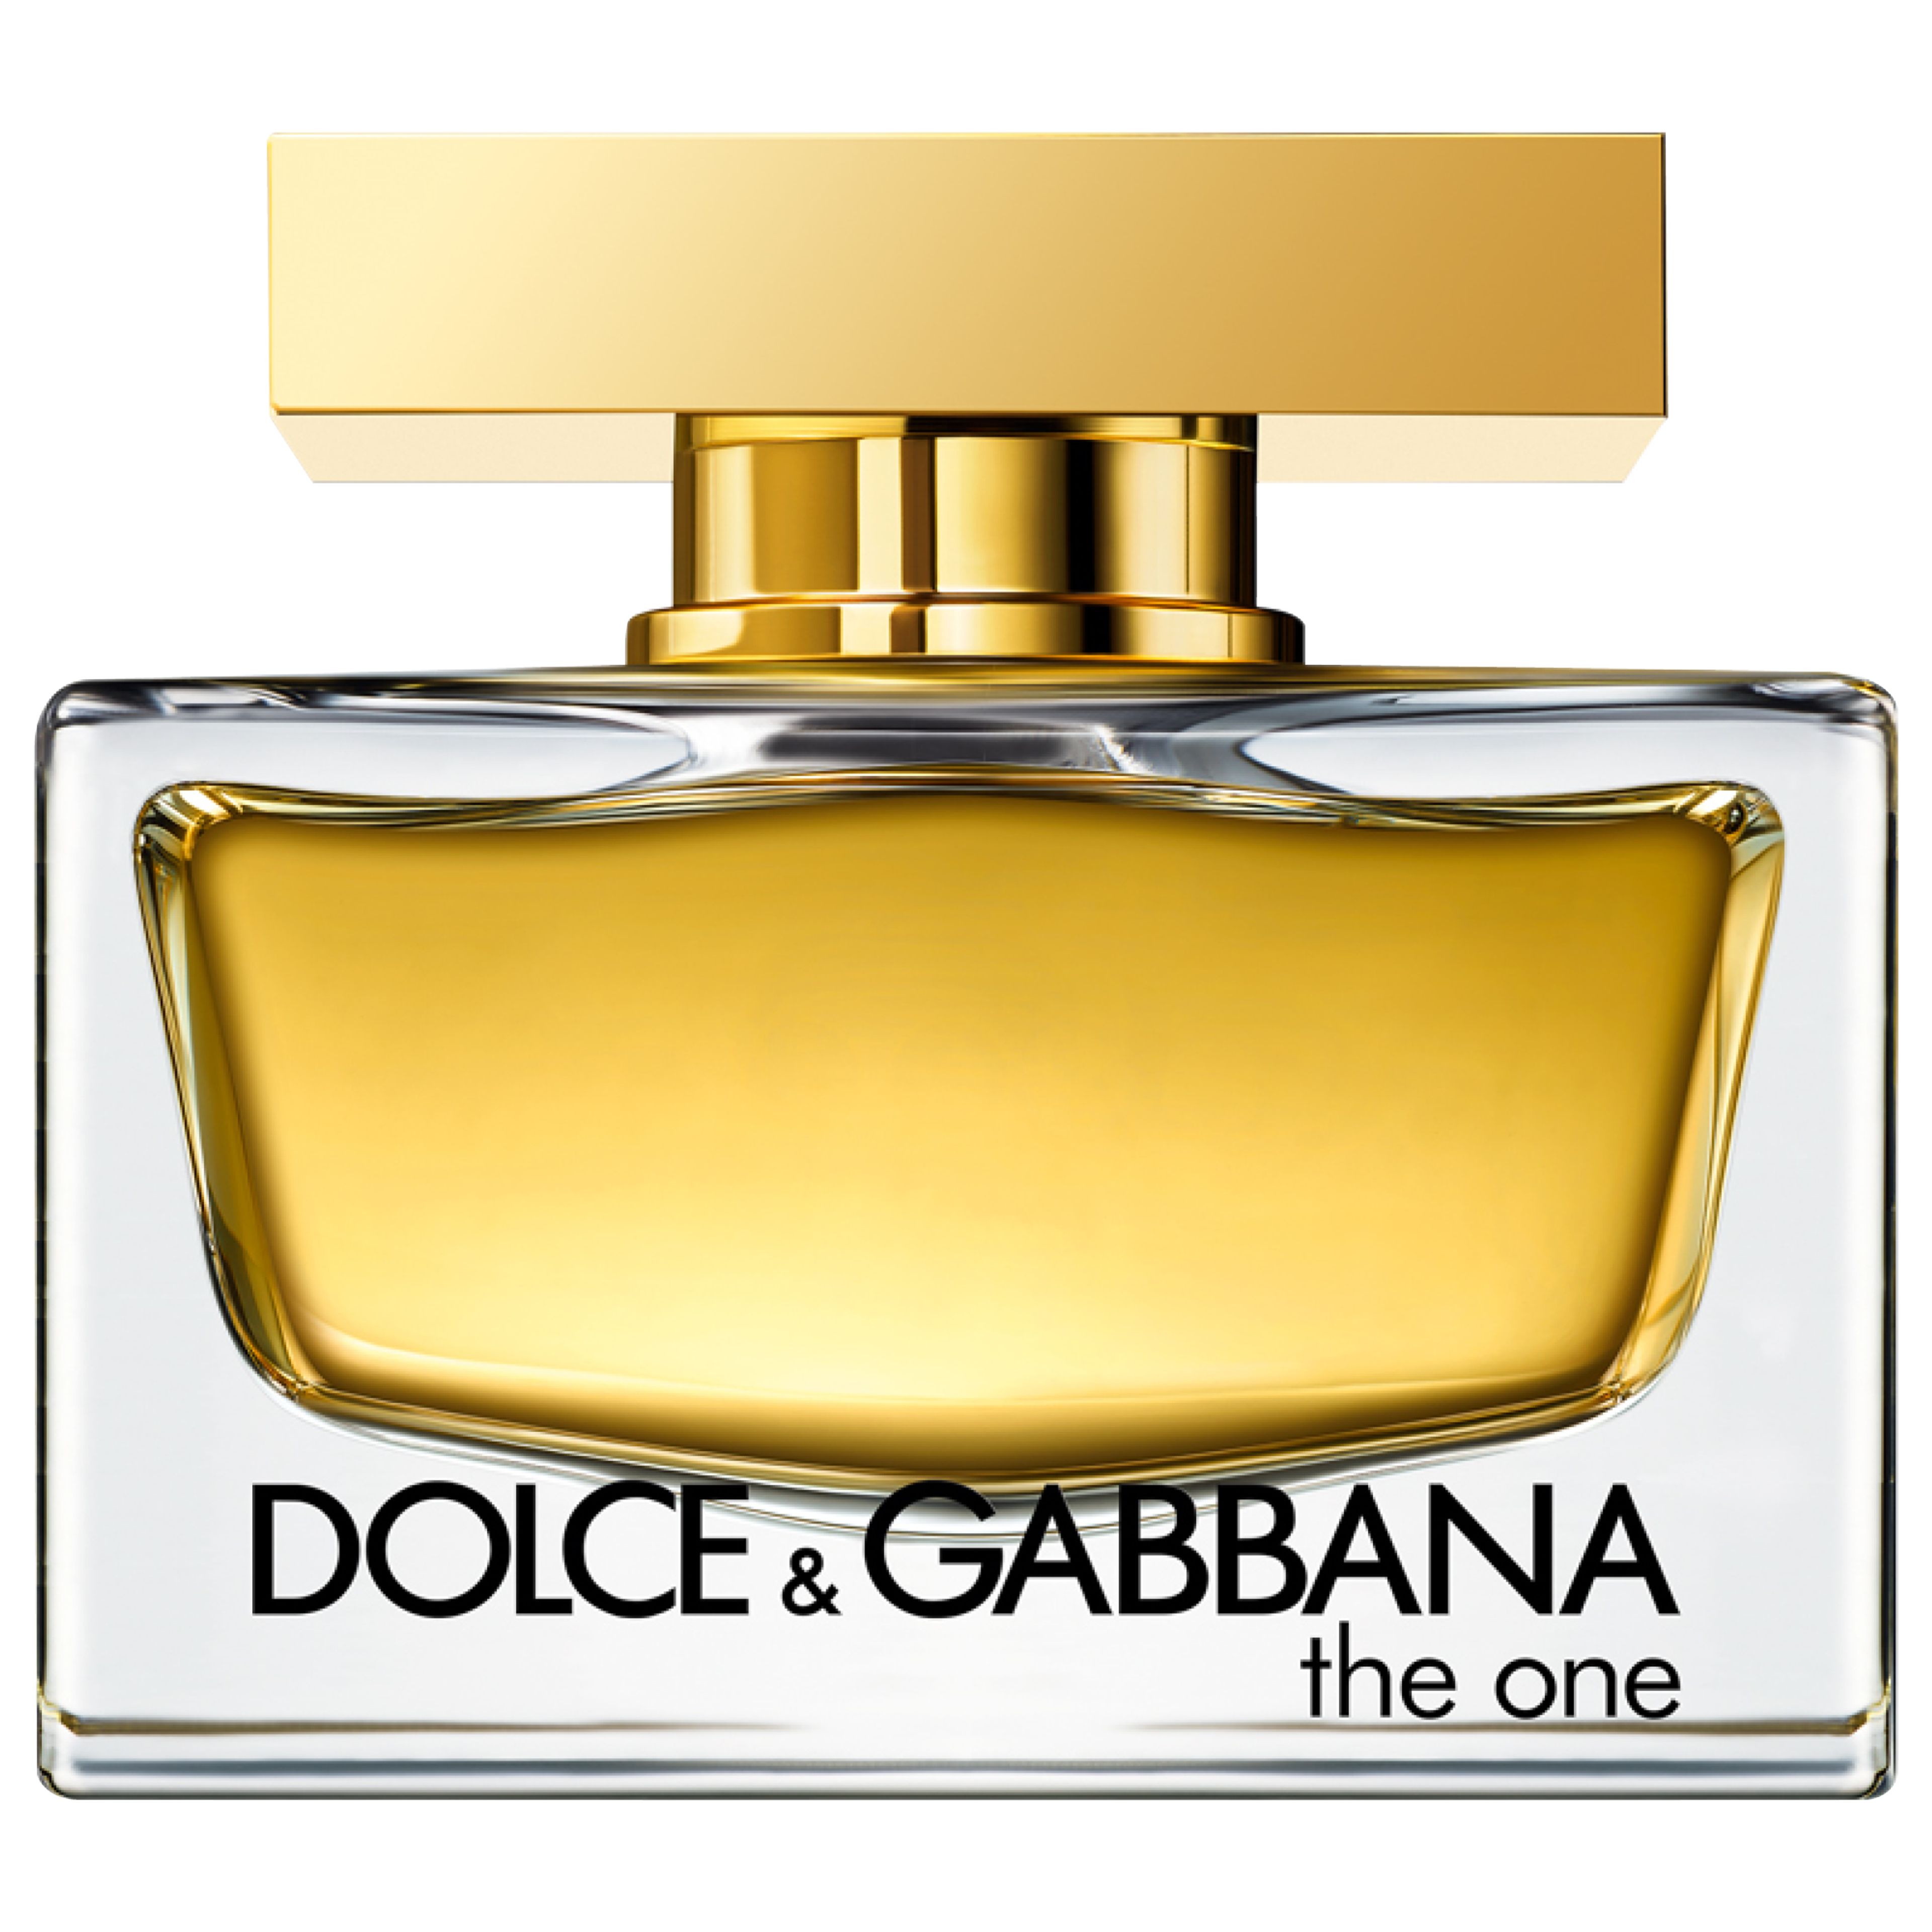 The One Eau De Parfum Dolce & Gabbana 1